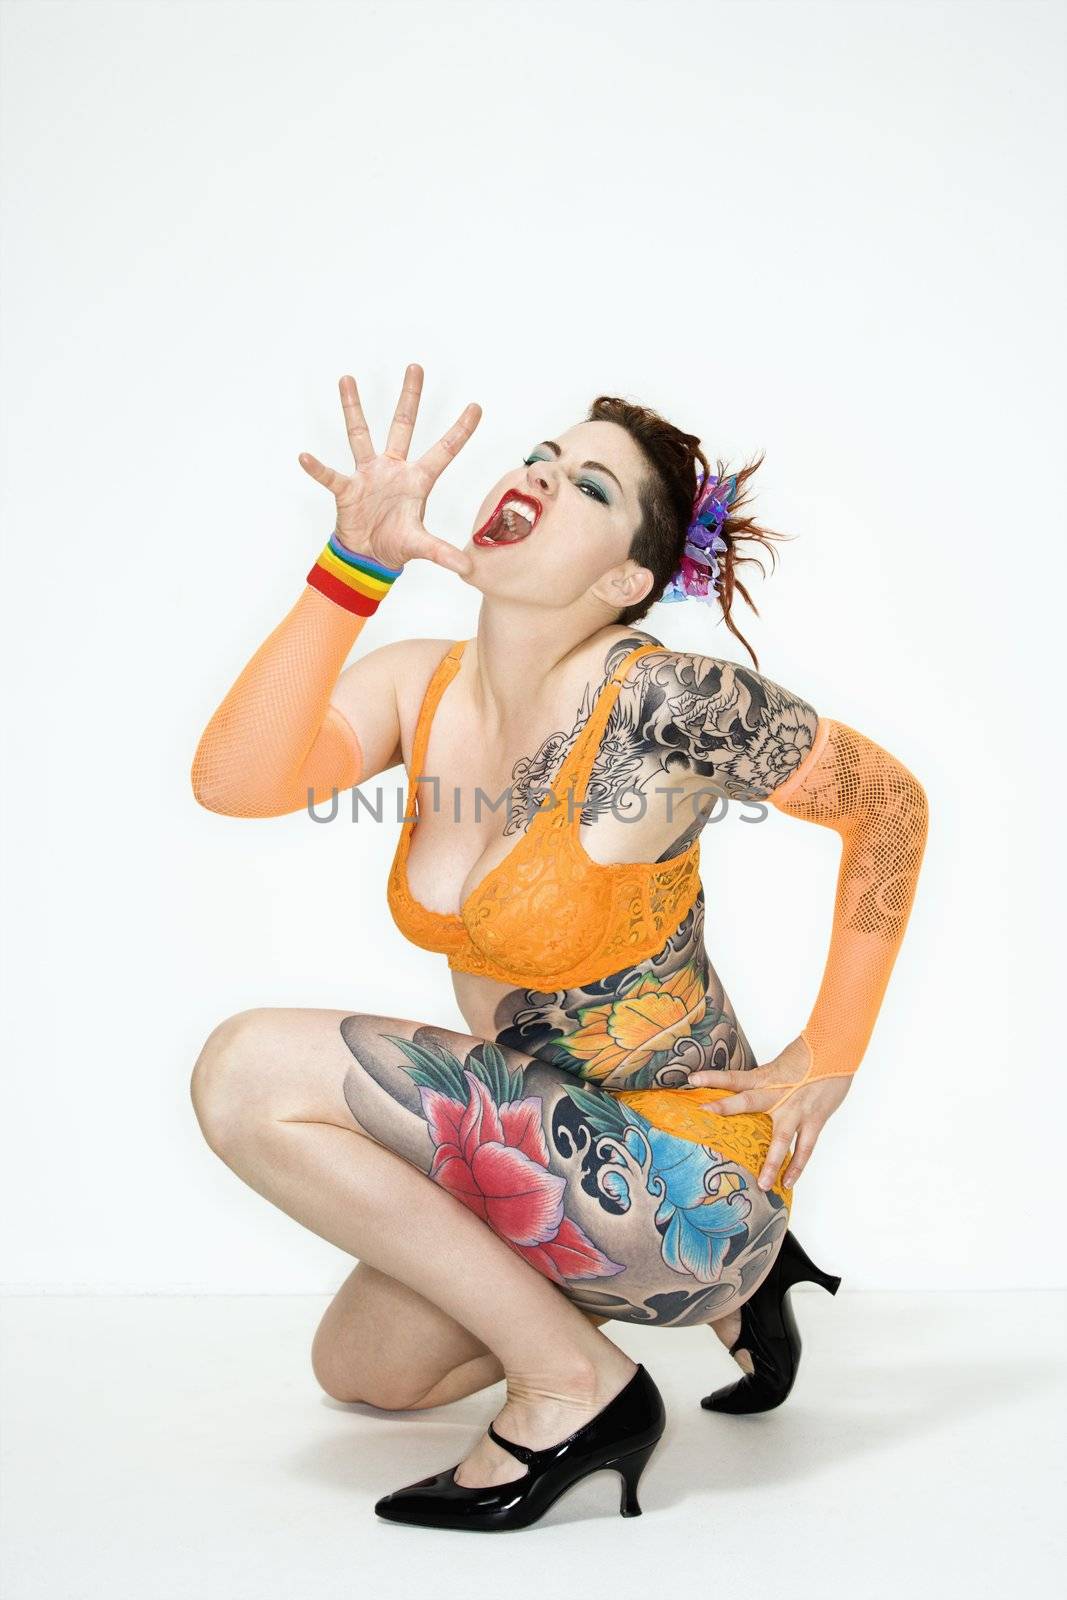 Squatting tattooed woman by iofoto